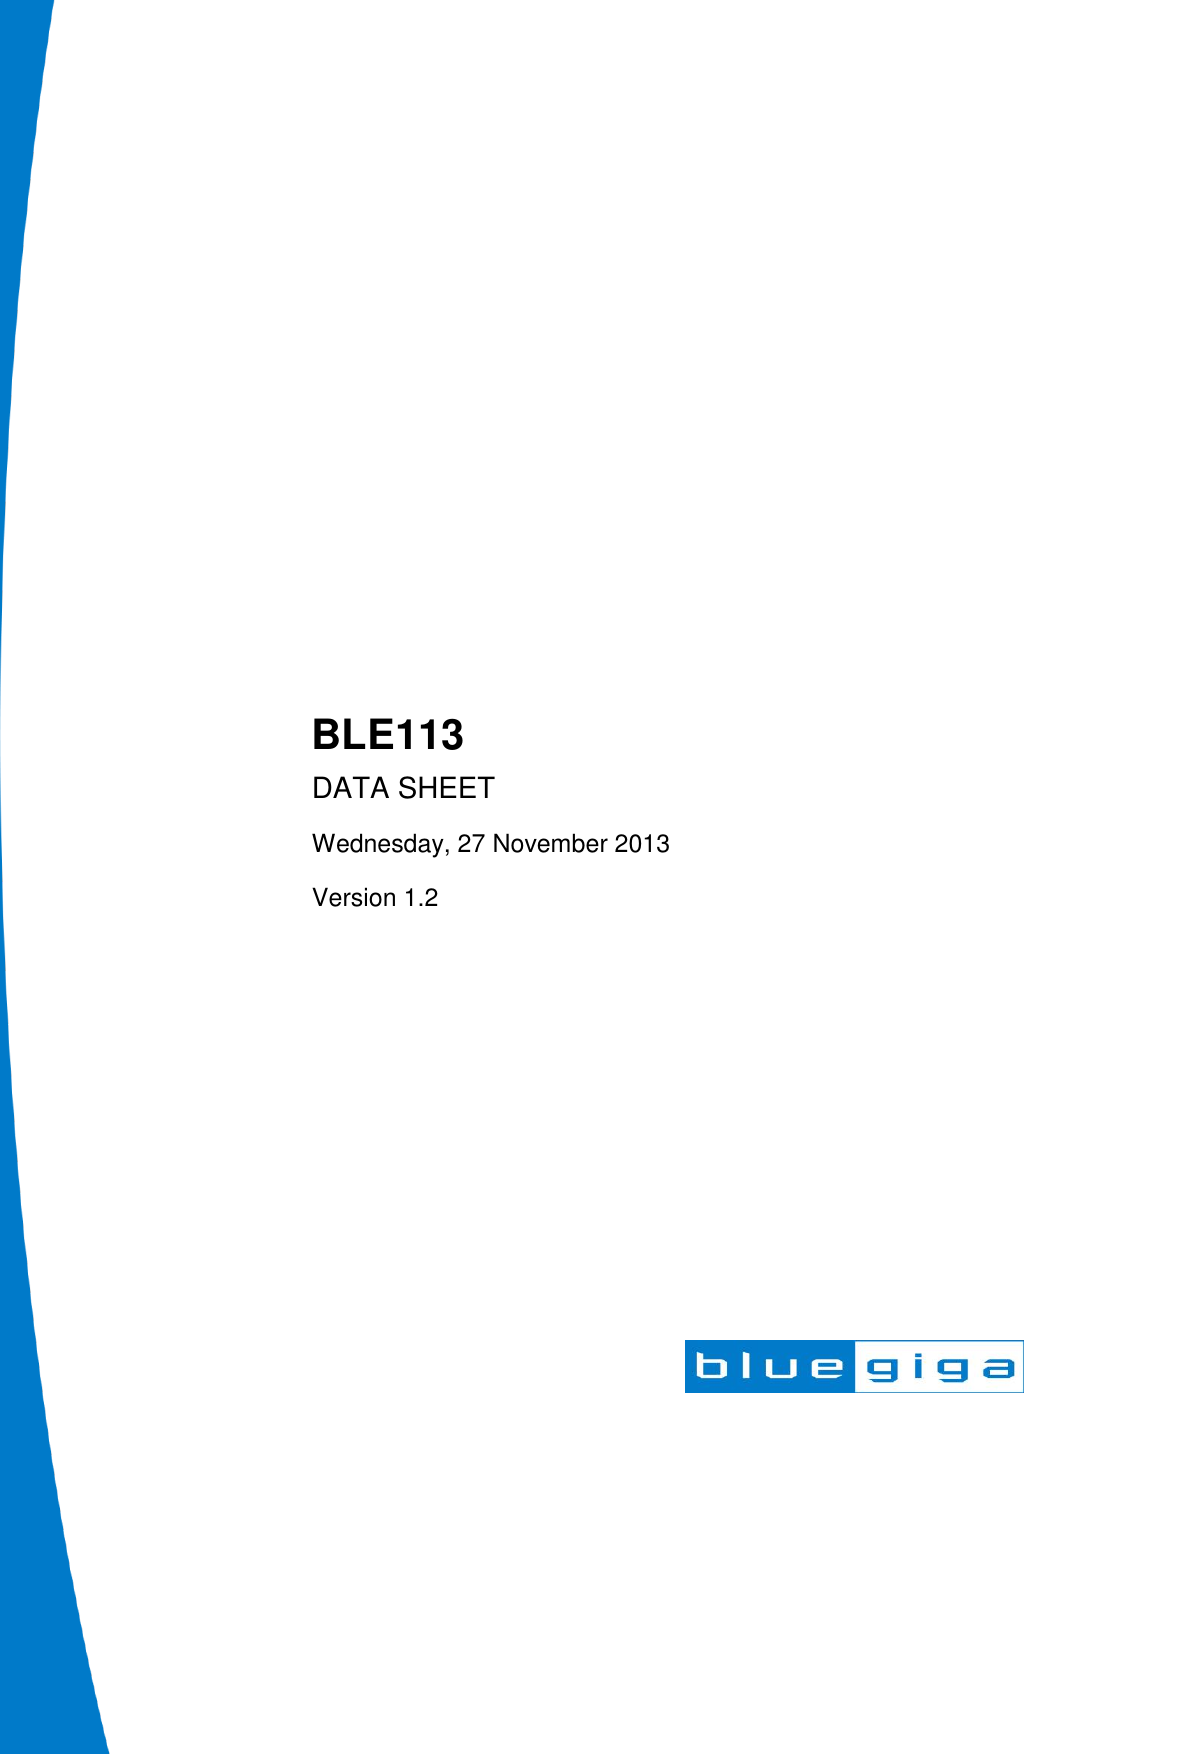                           BLE113 DATA SHEET Wednesday, 27 November 2013 Version 1.2  